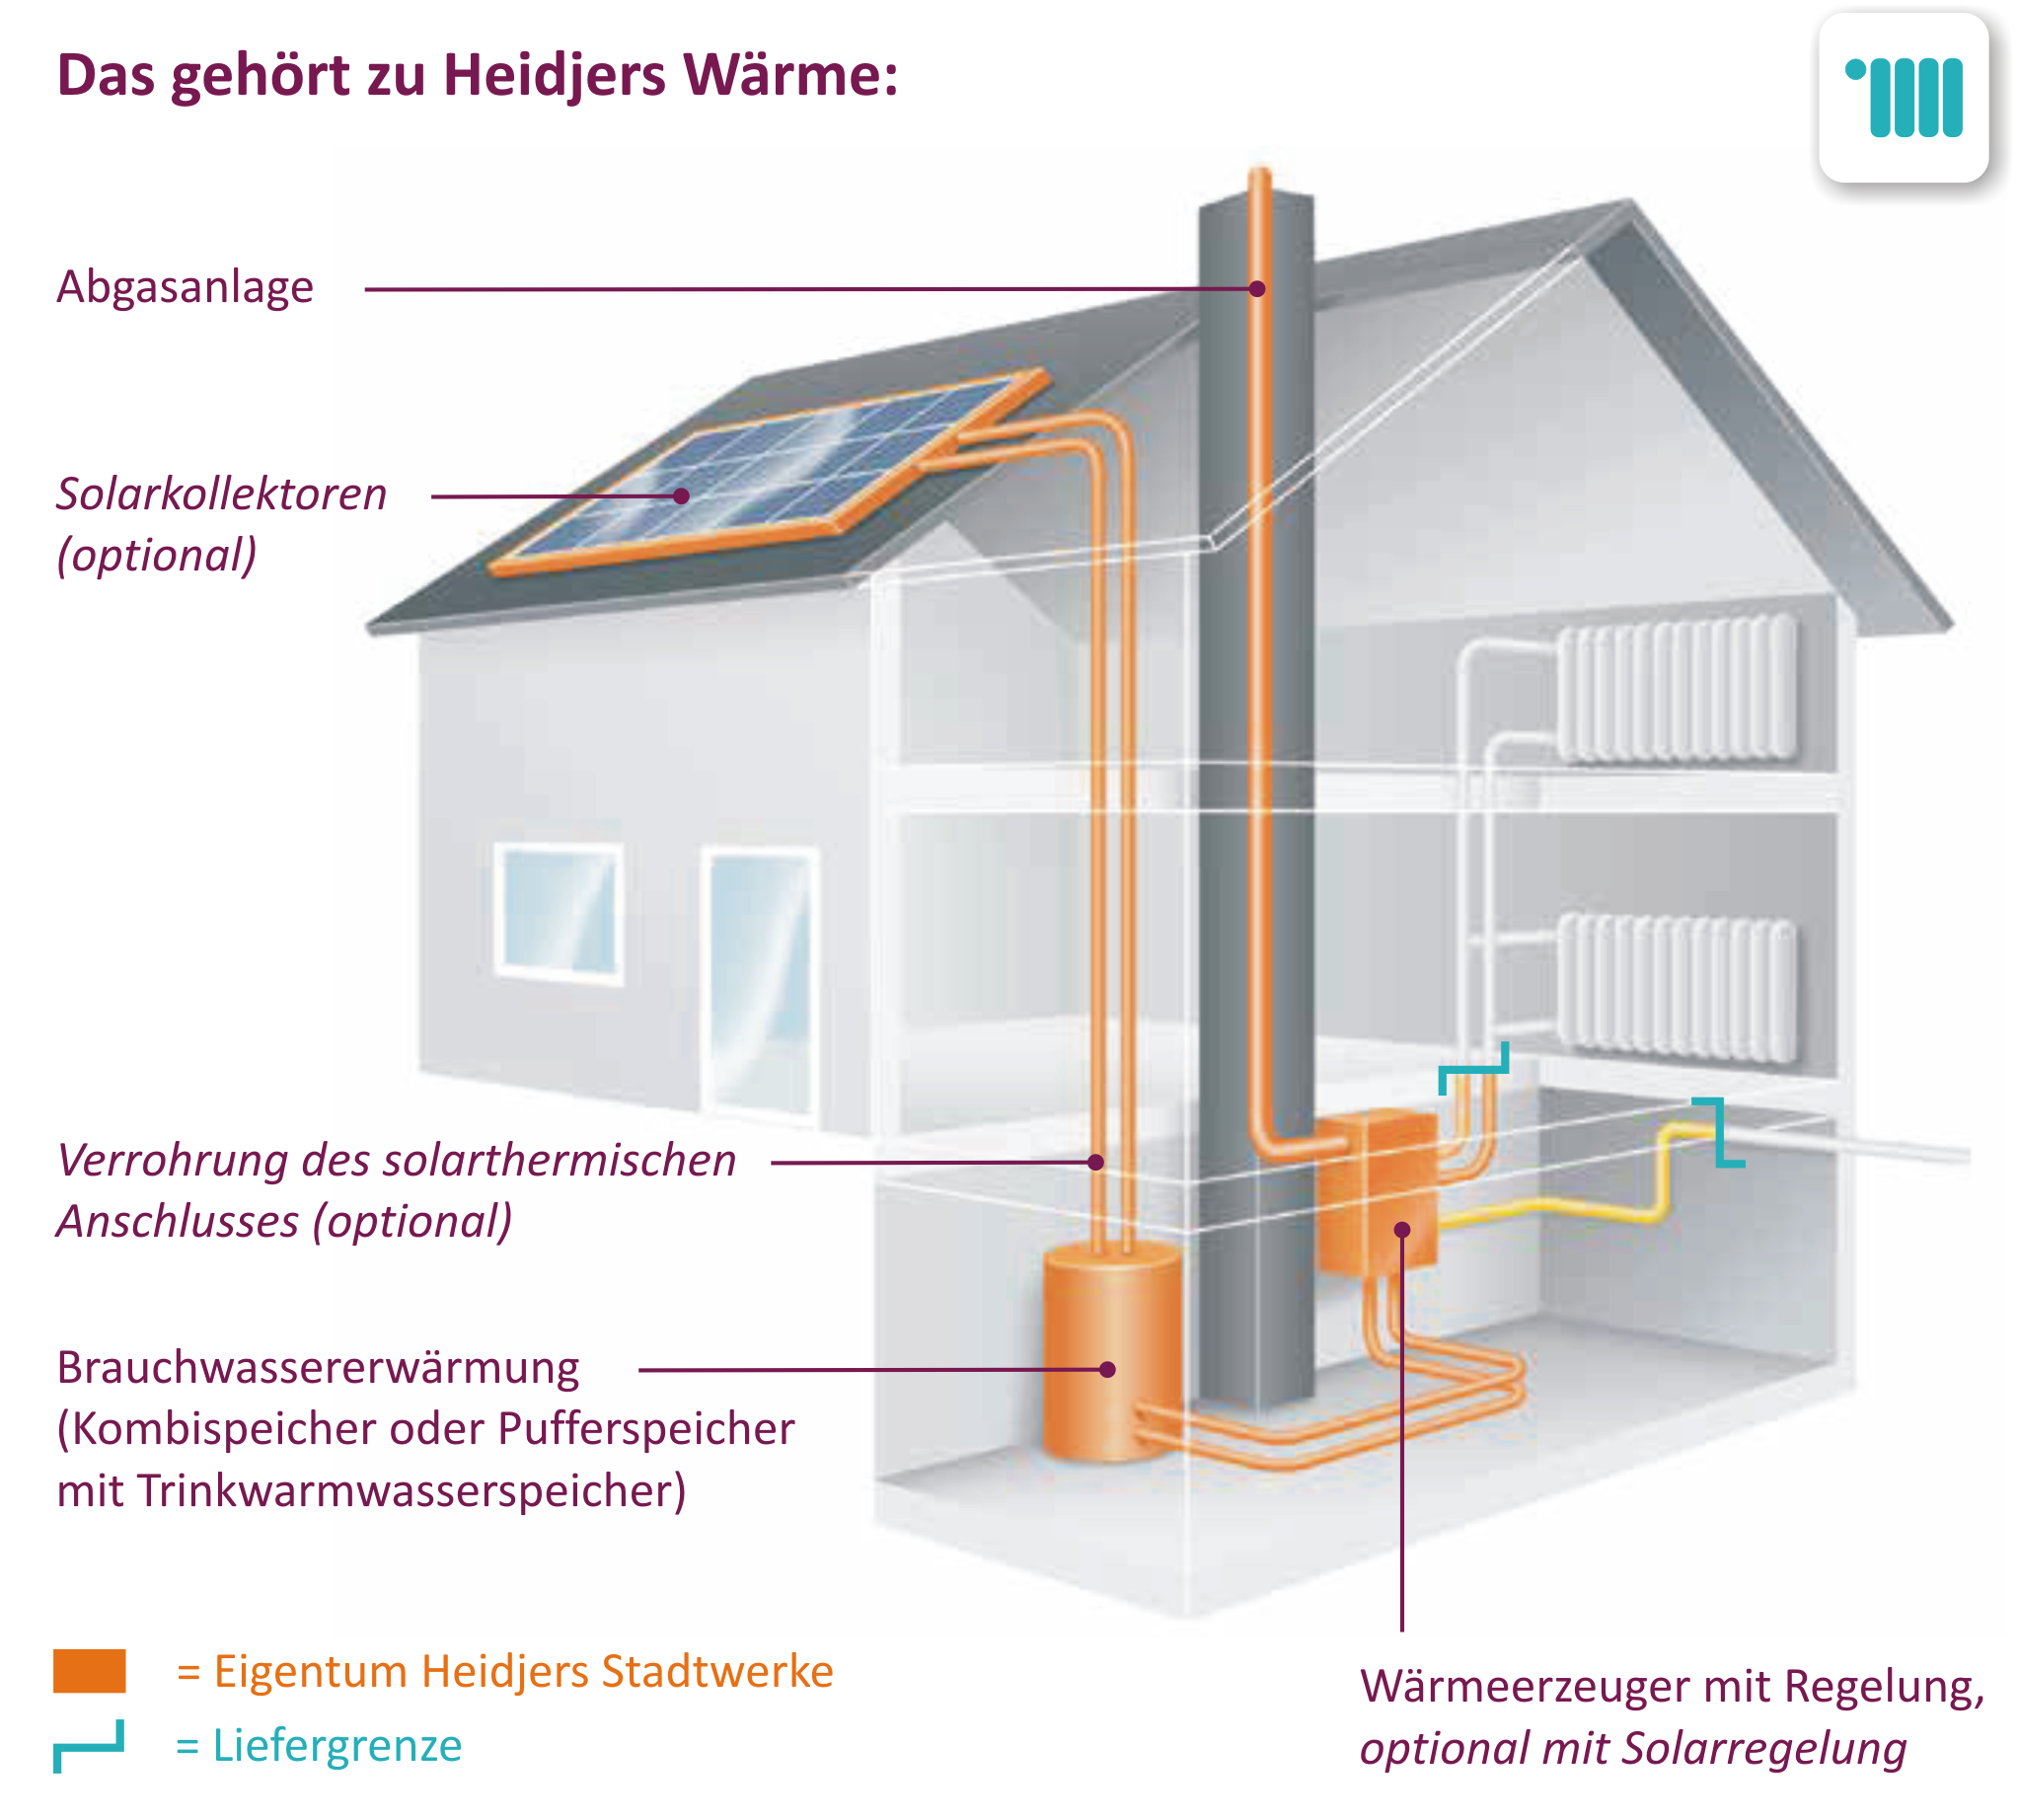 Hauses mit Wärme Kreislauf und Versorgung durch Heidjers Stadtwerke